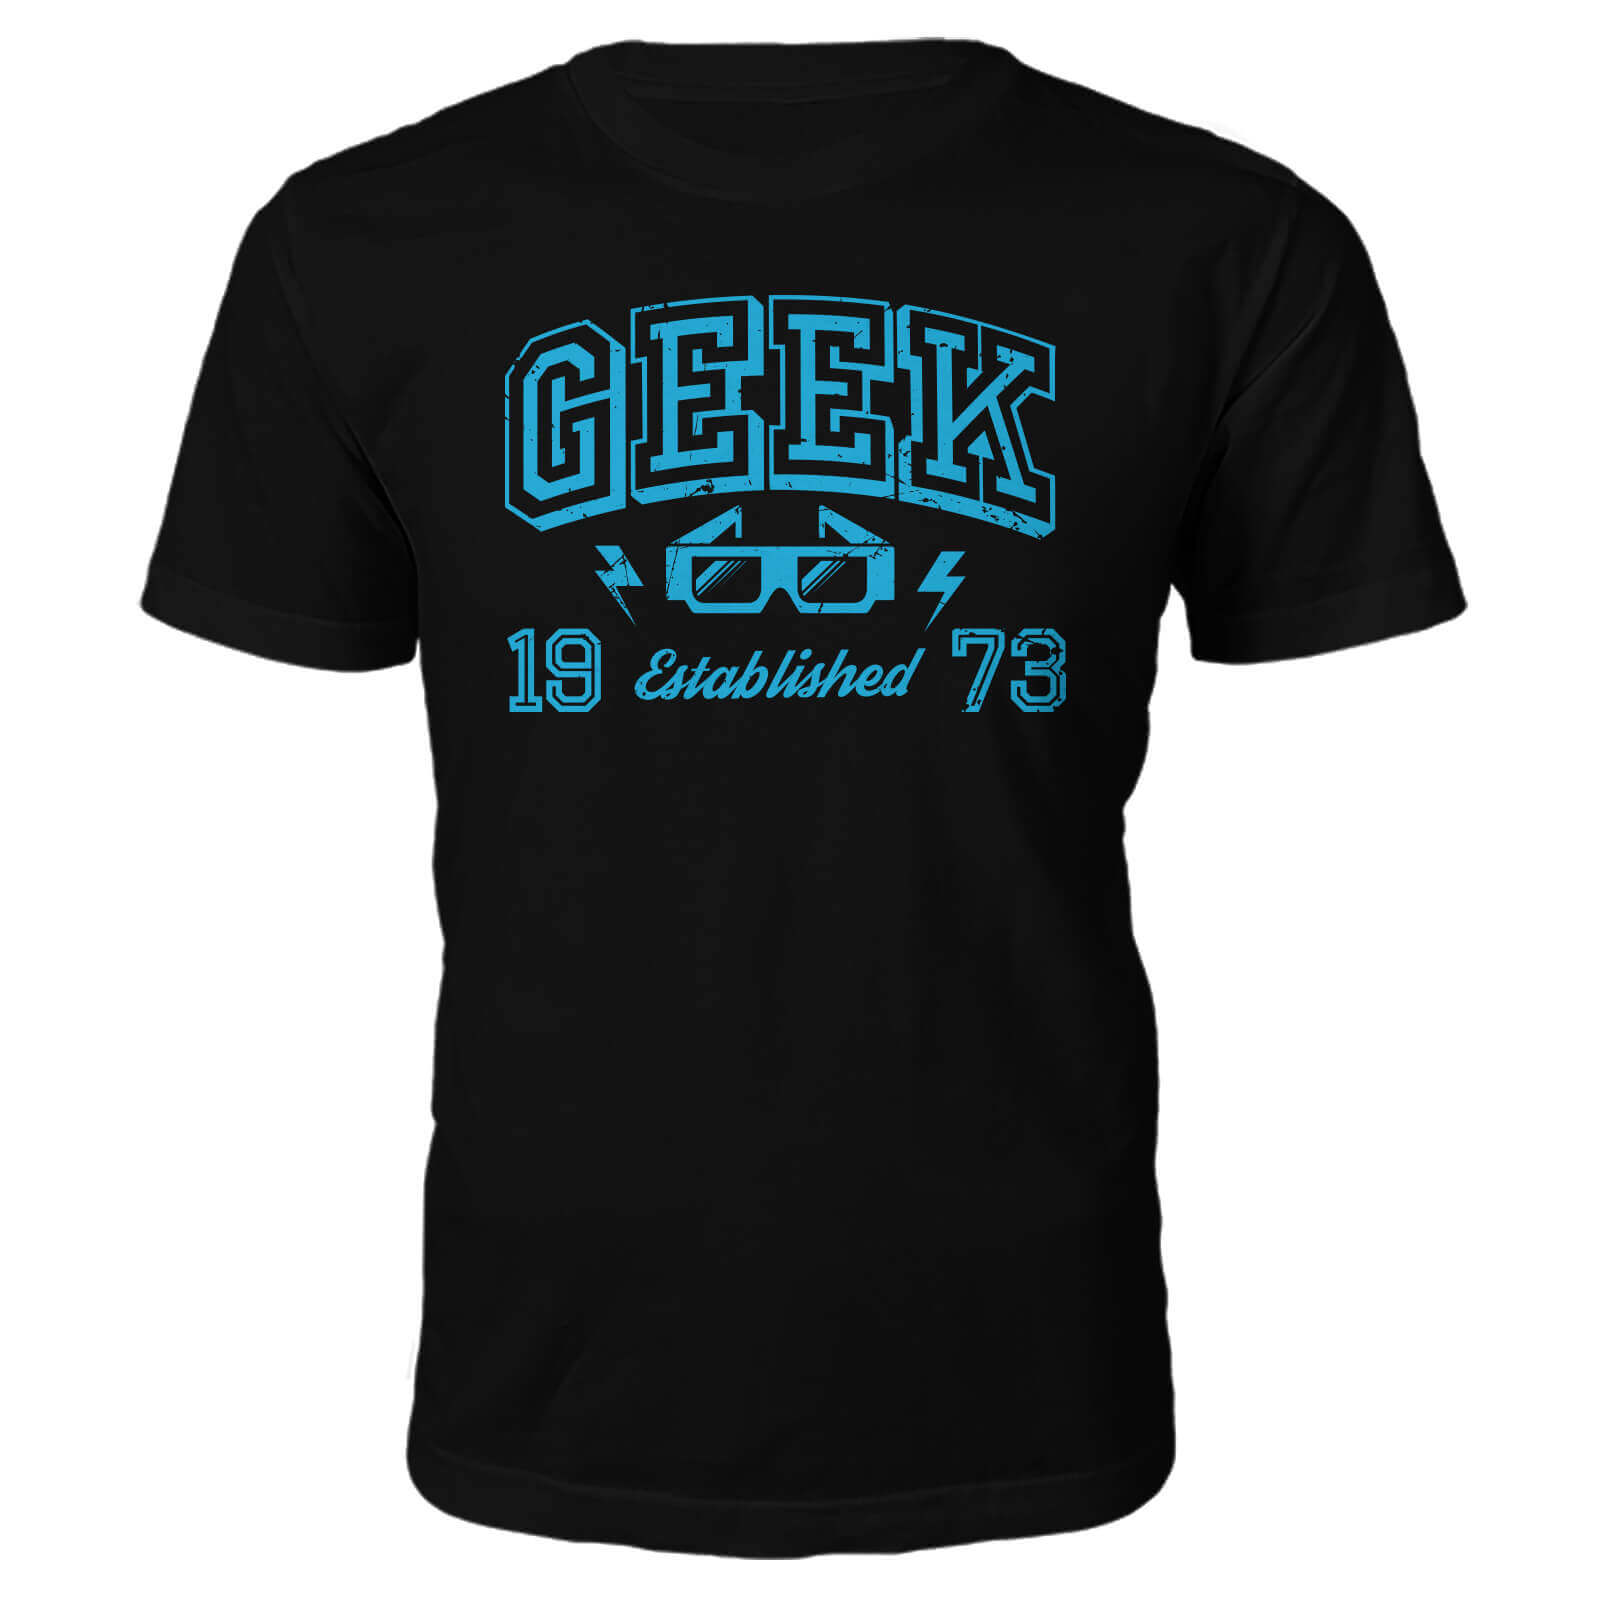 Geek Established 1970's T-Shirt- Black - S - 1973